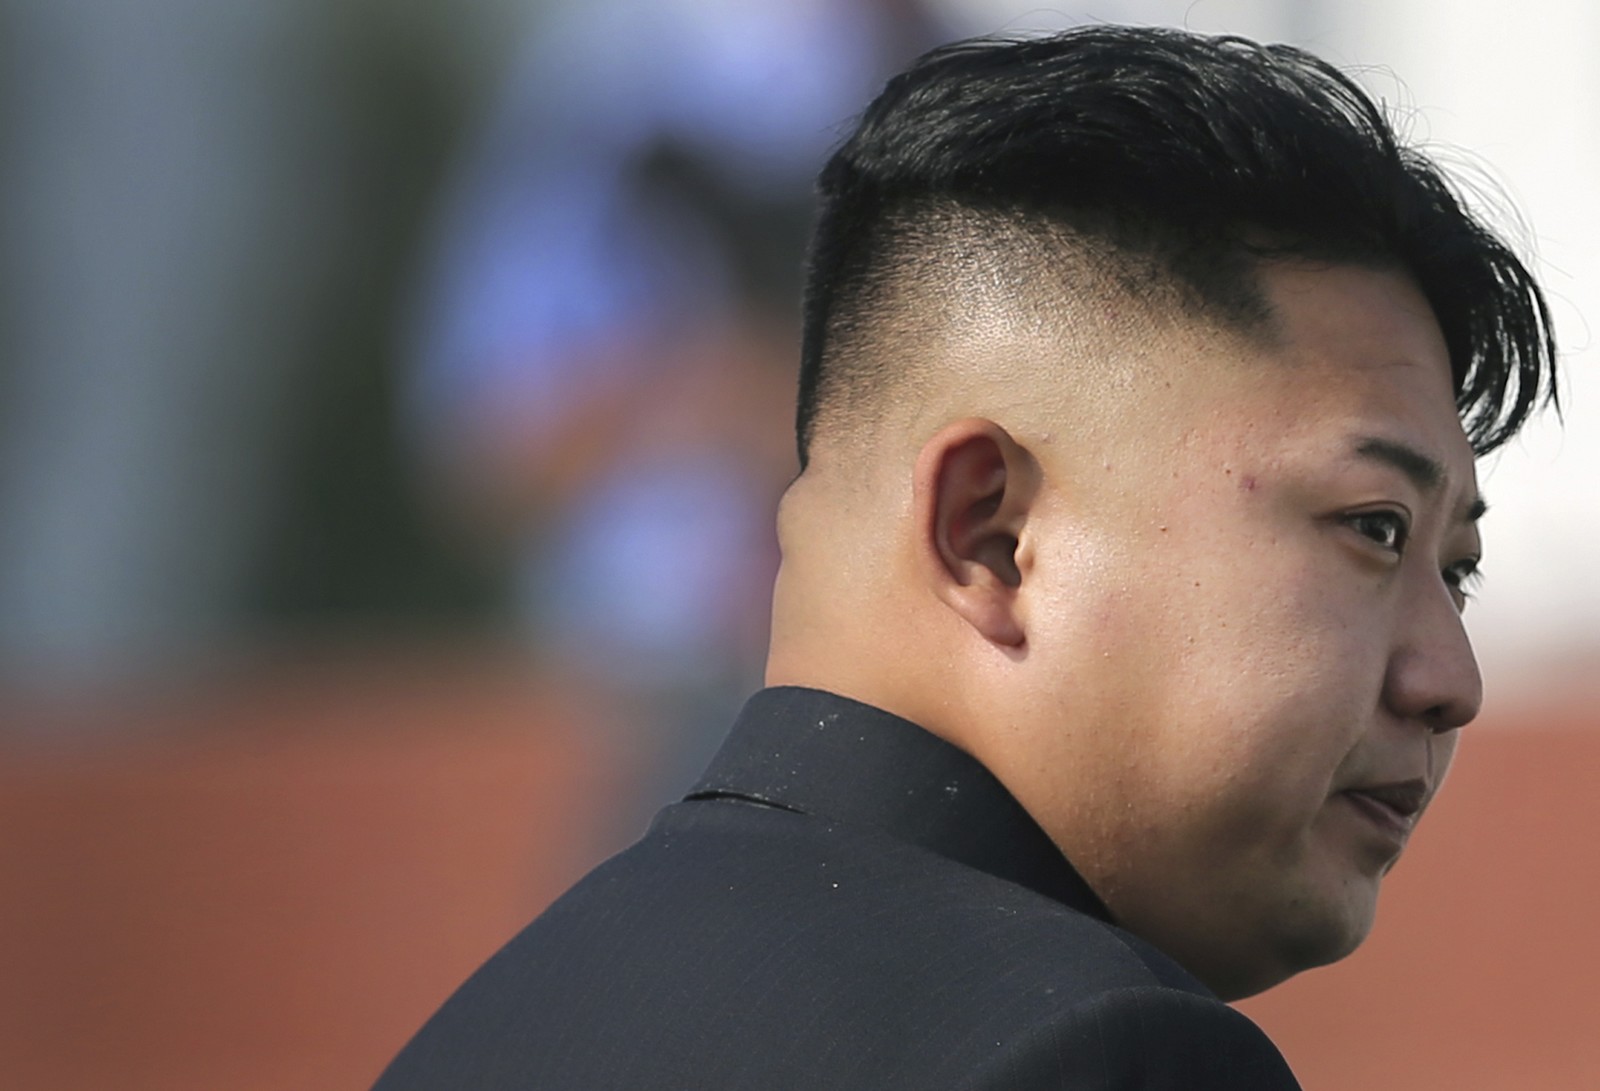 Βόρεια Κορέα: Ο Κιμ Γιονγκ Ουν “έκοψε” τον αρχηγό του Στρατού και ζήτησε αύξηση όπλων